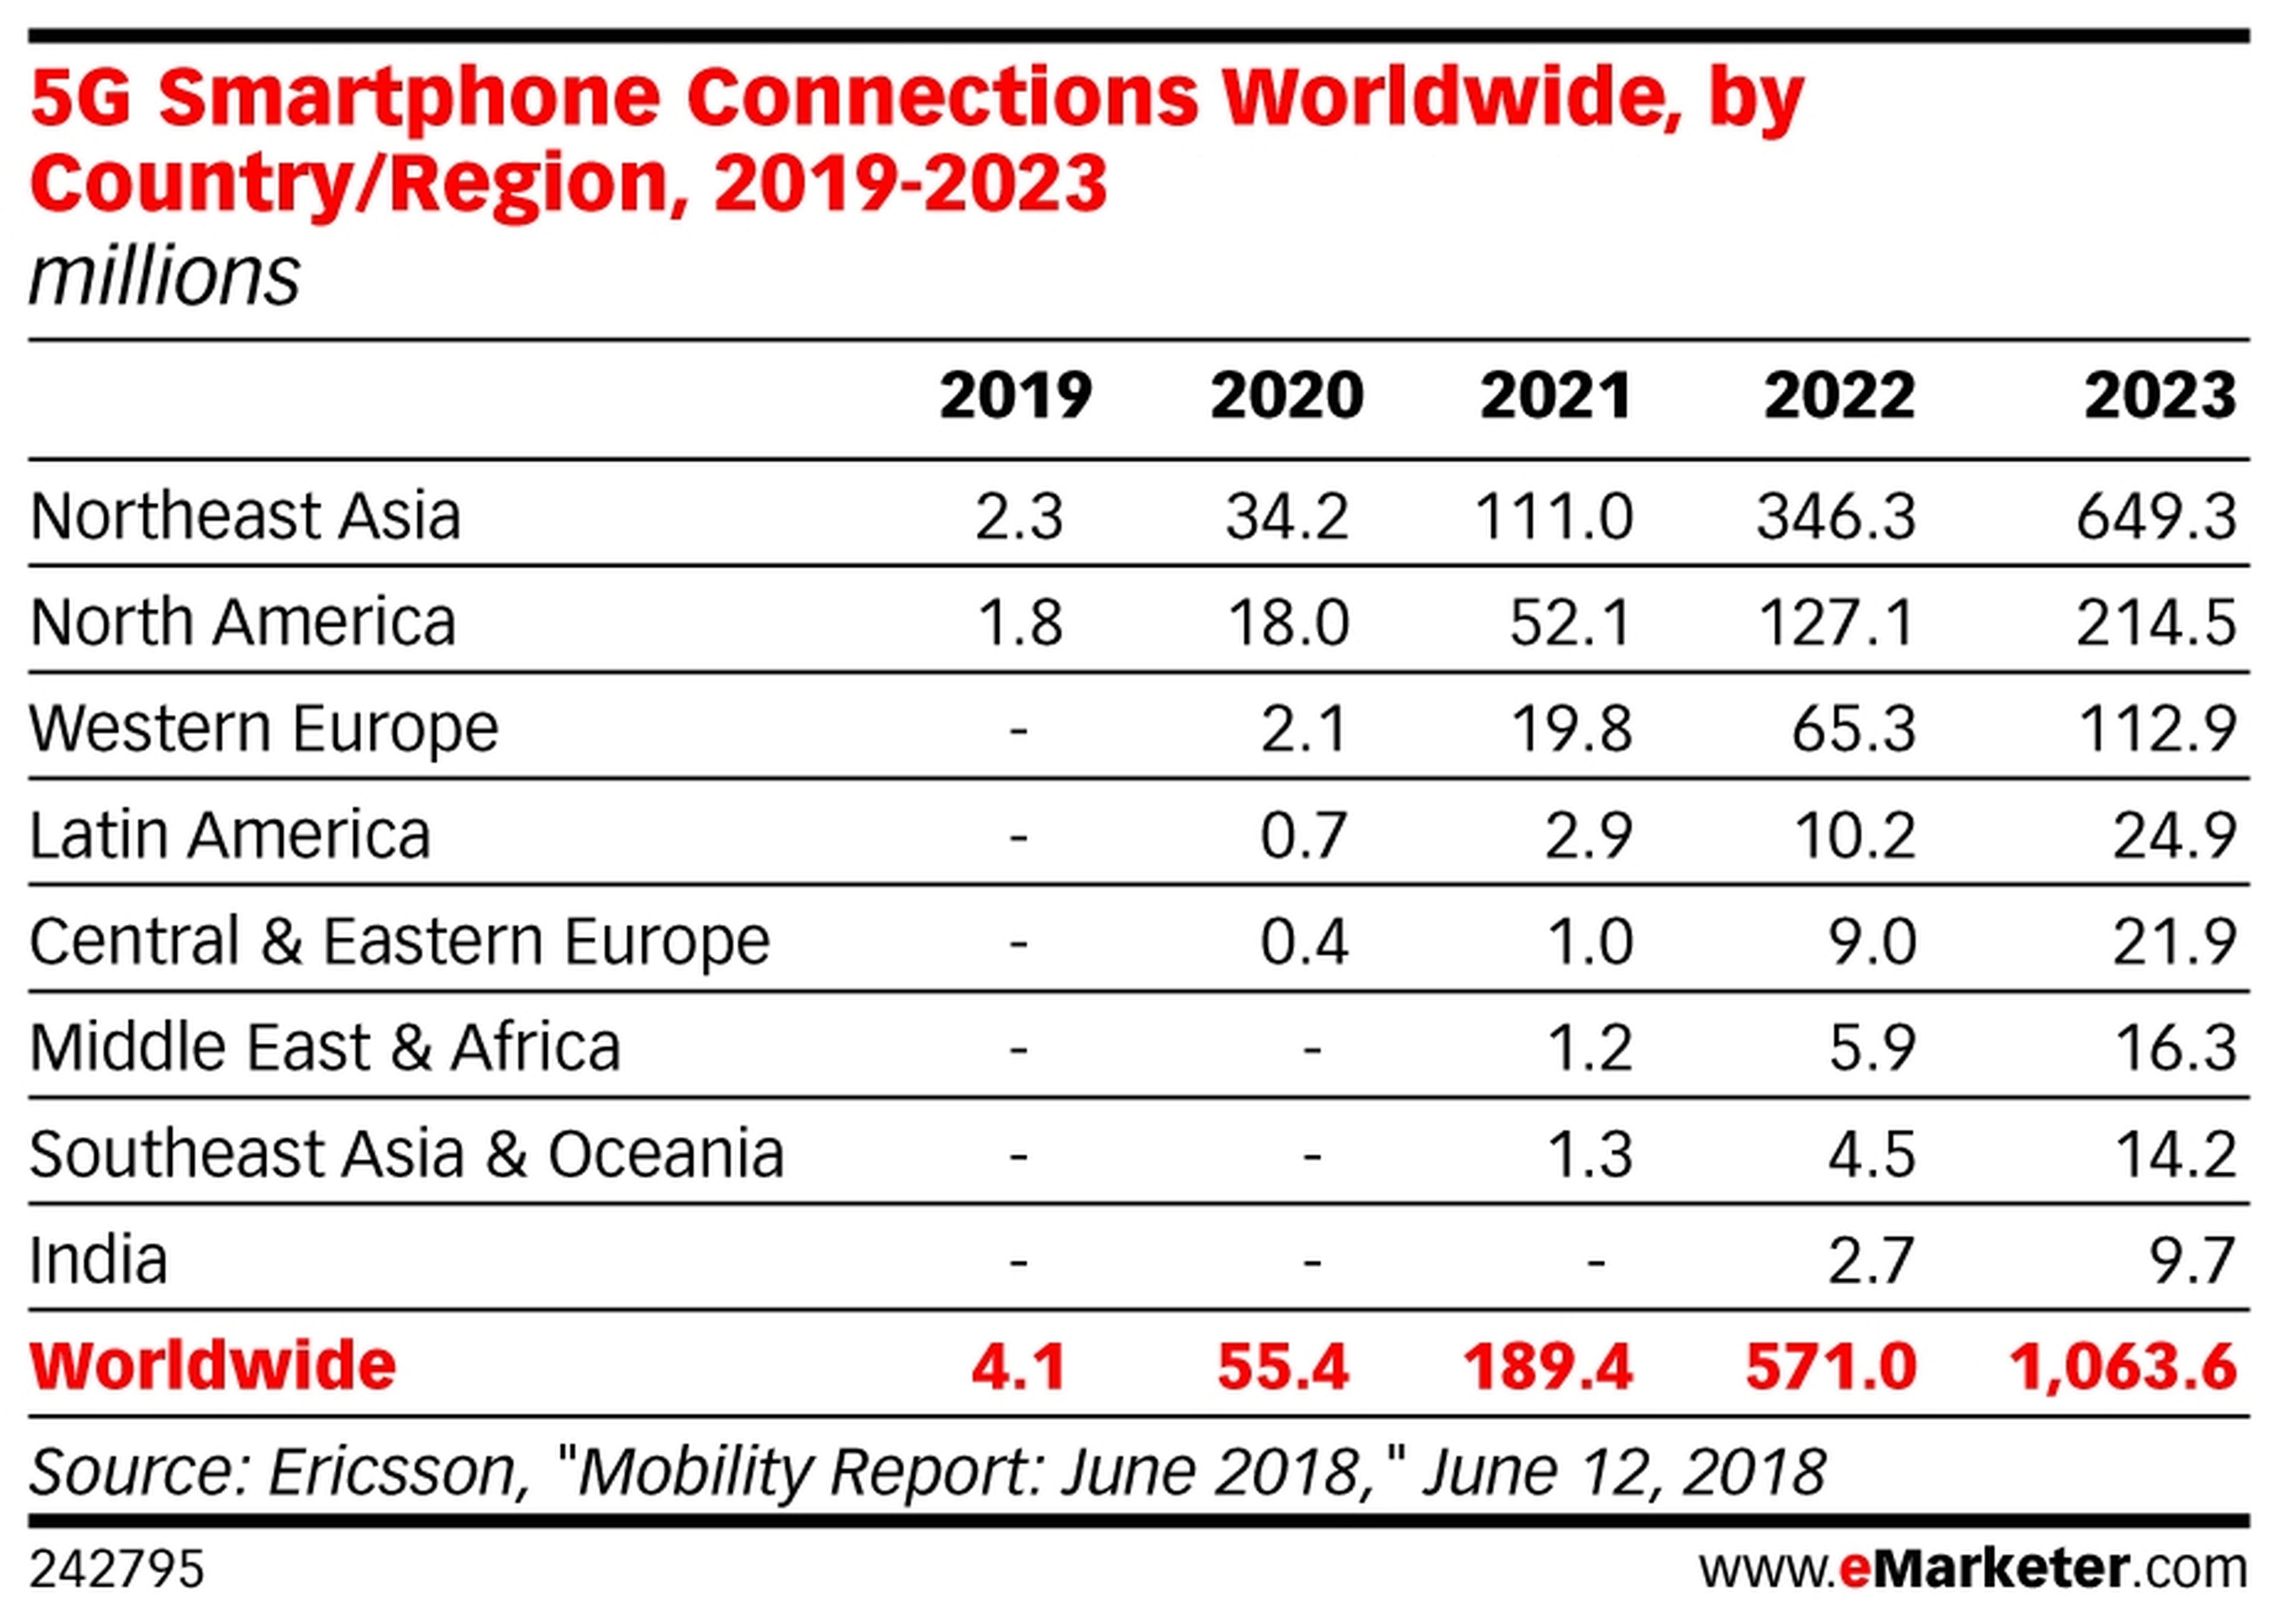 Conexiones de móviles con 5G a nivel mundial, de 2019 a 2023.